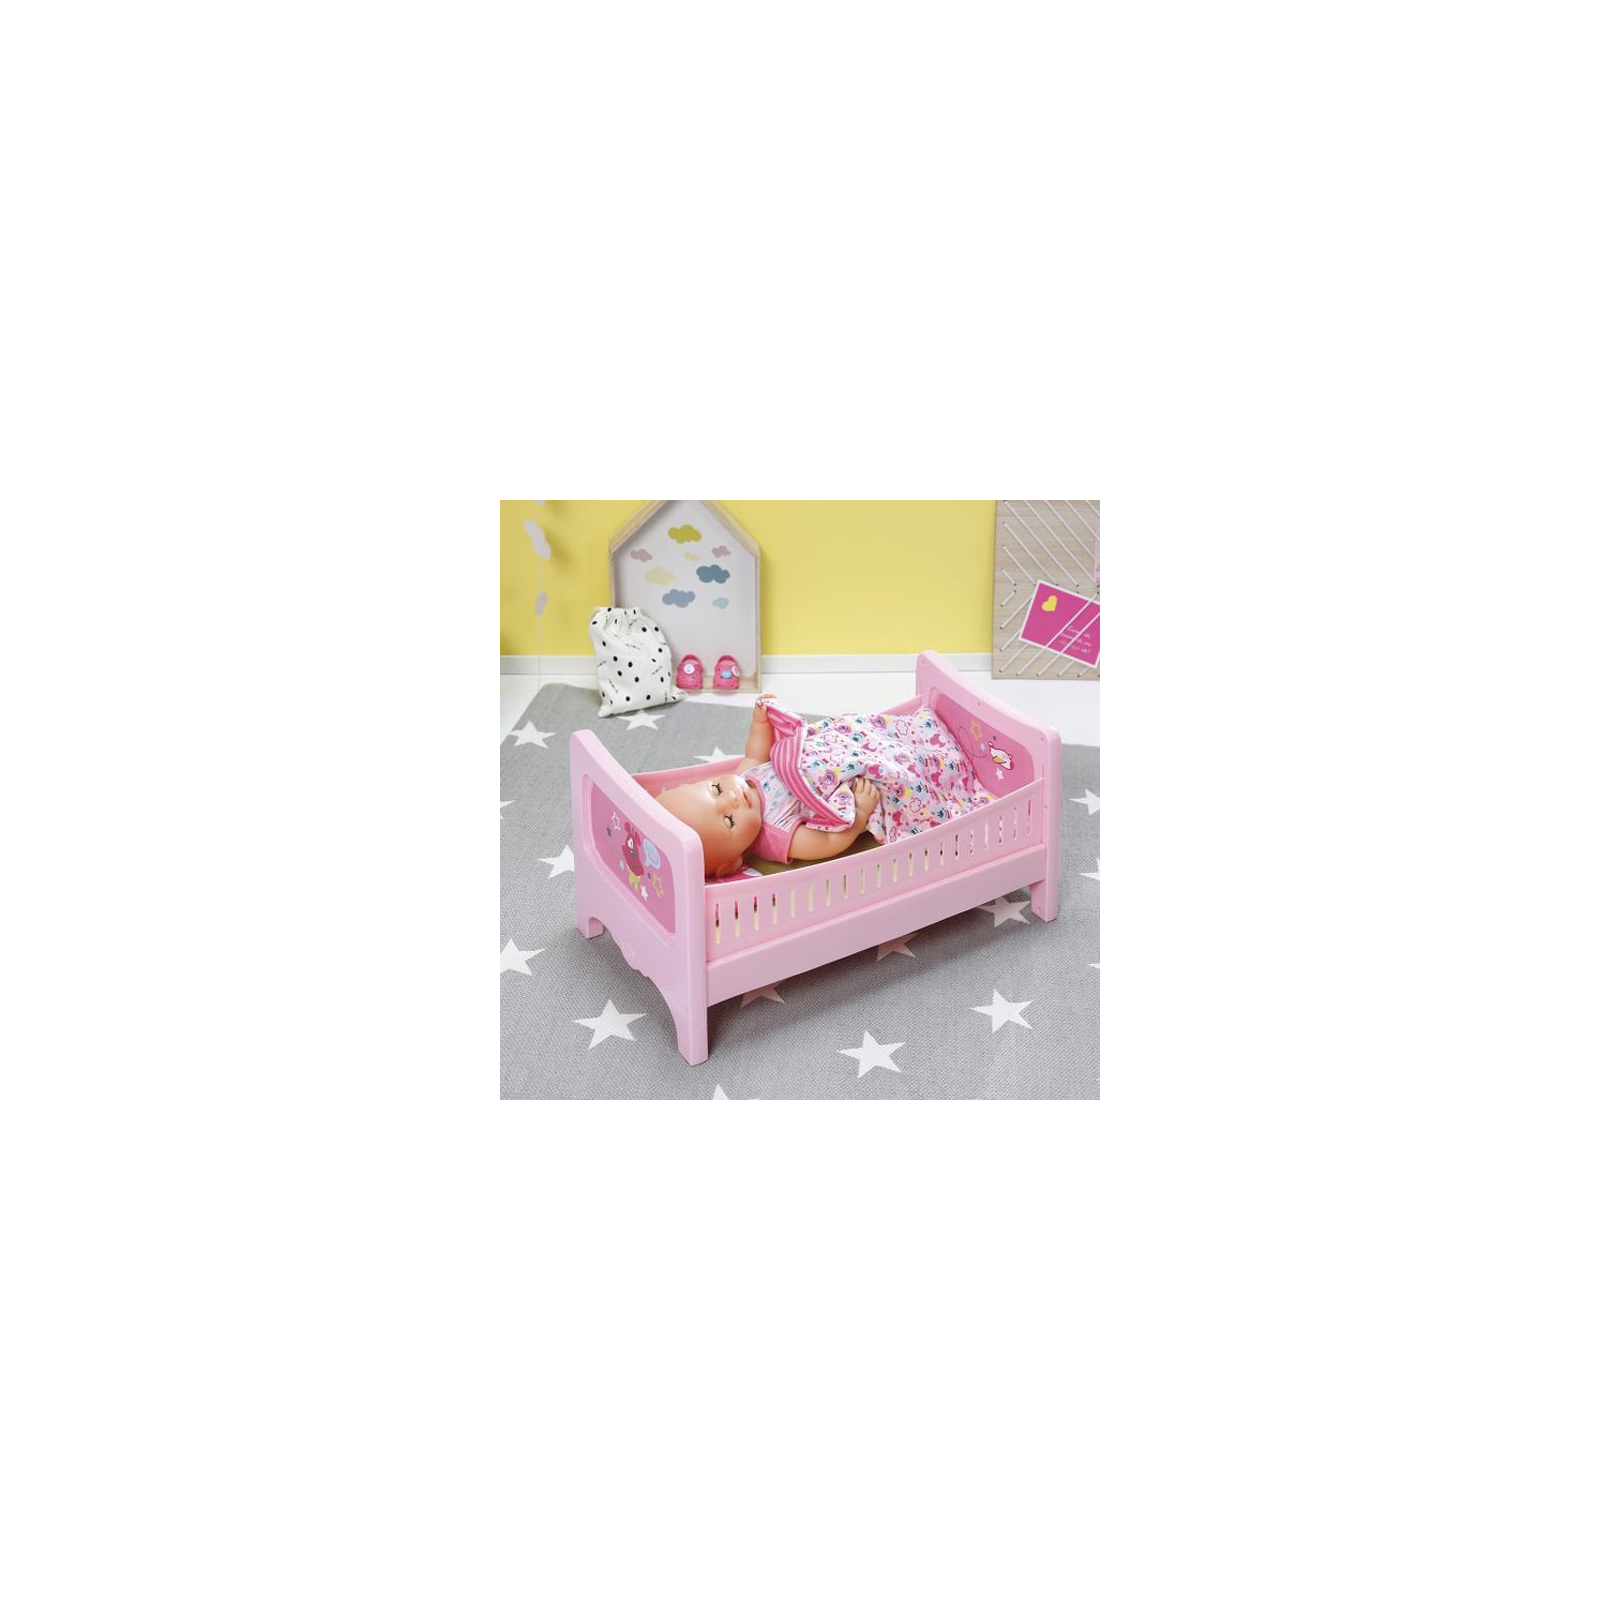 Аксессуар к кукле Zapf кроватка Сладкие сны (824399) изображение 6